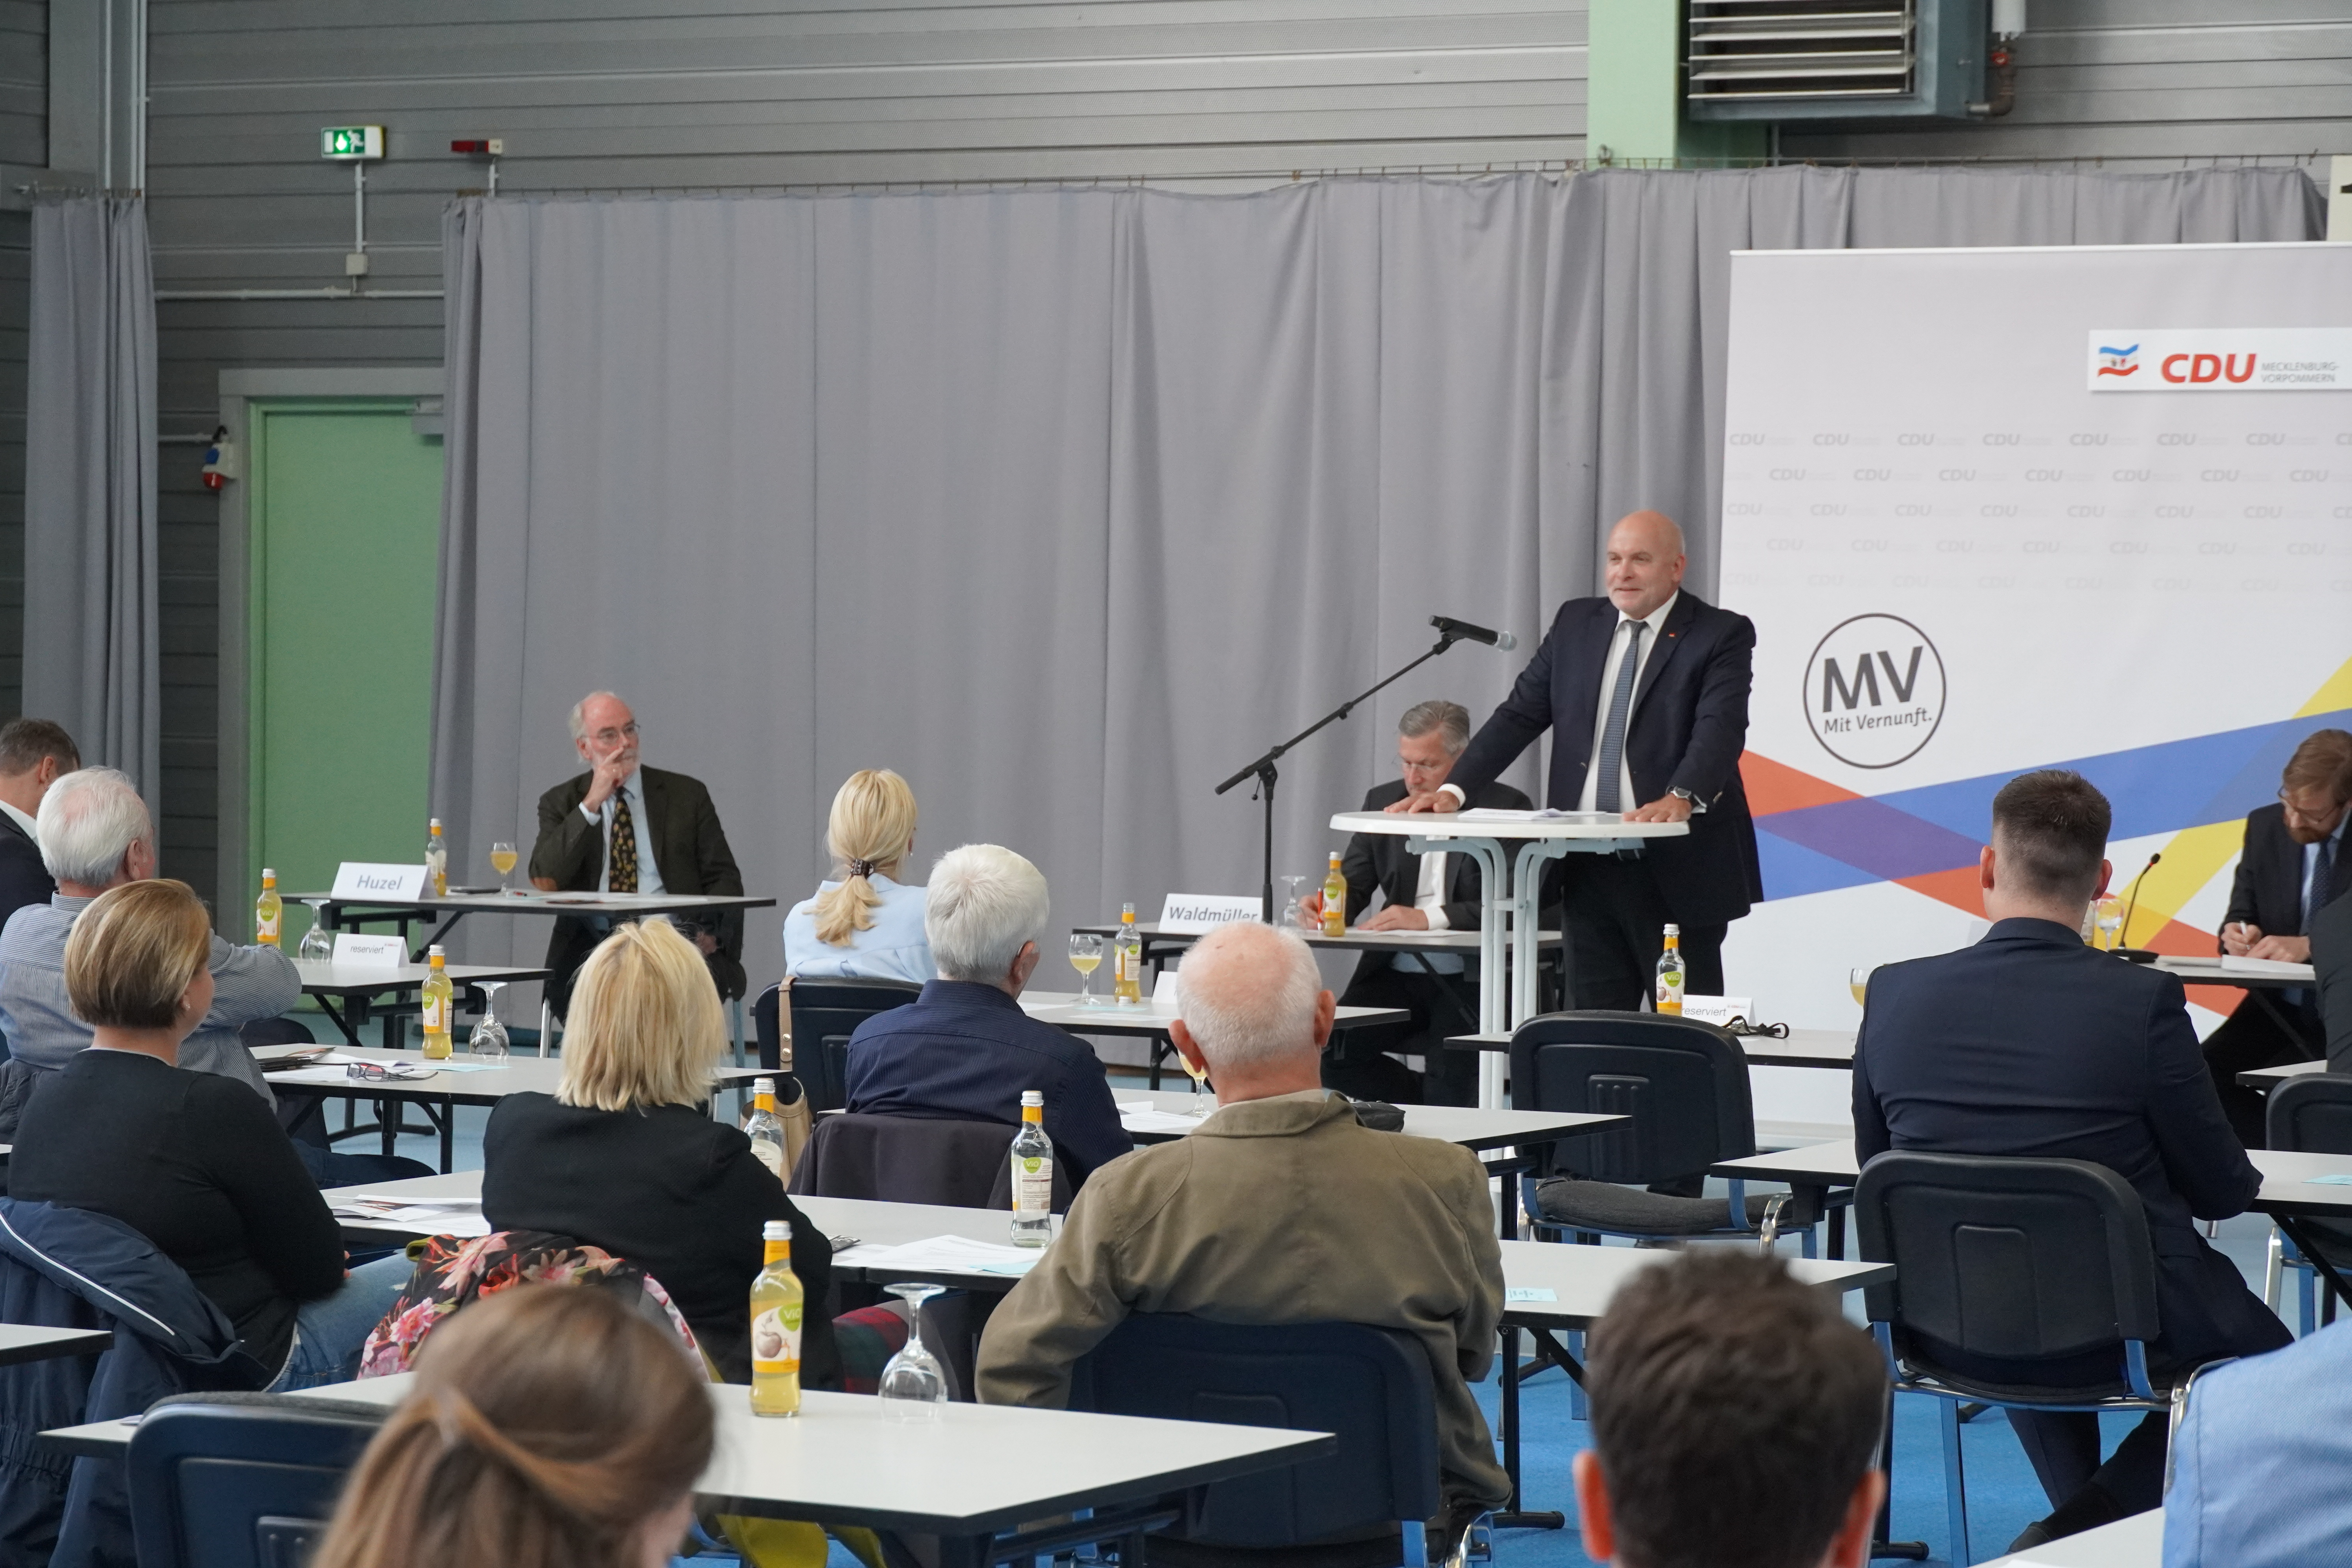 Schwerin: CDU nominiert Dietrich Monstadt